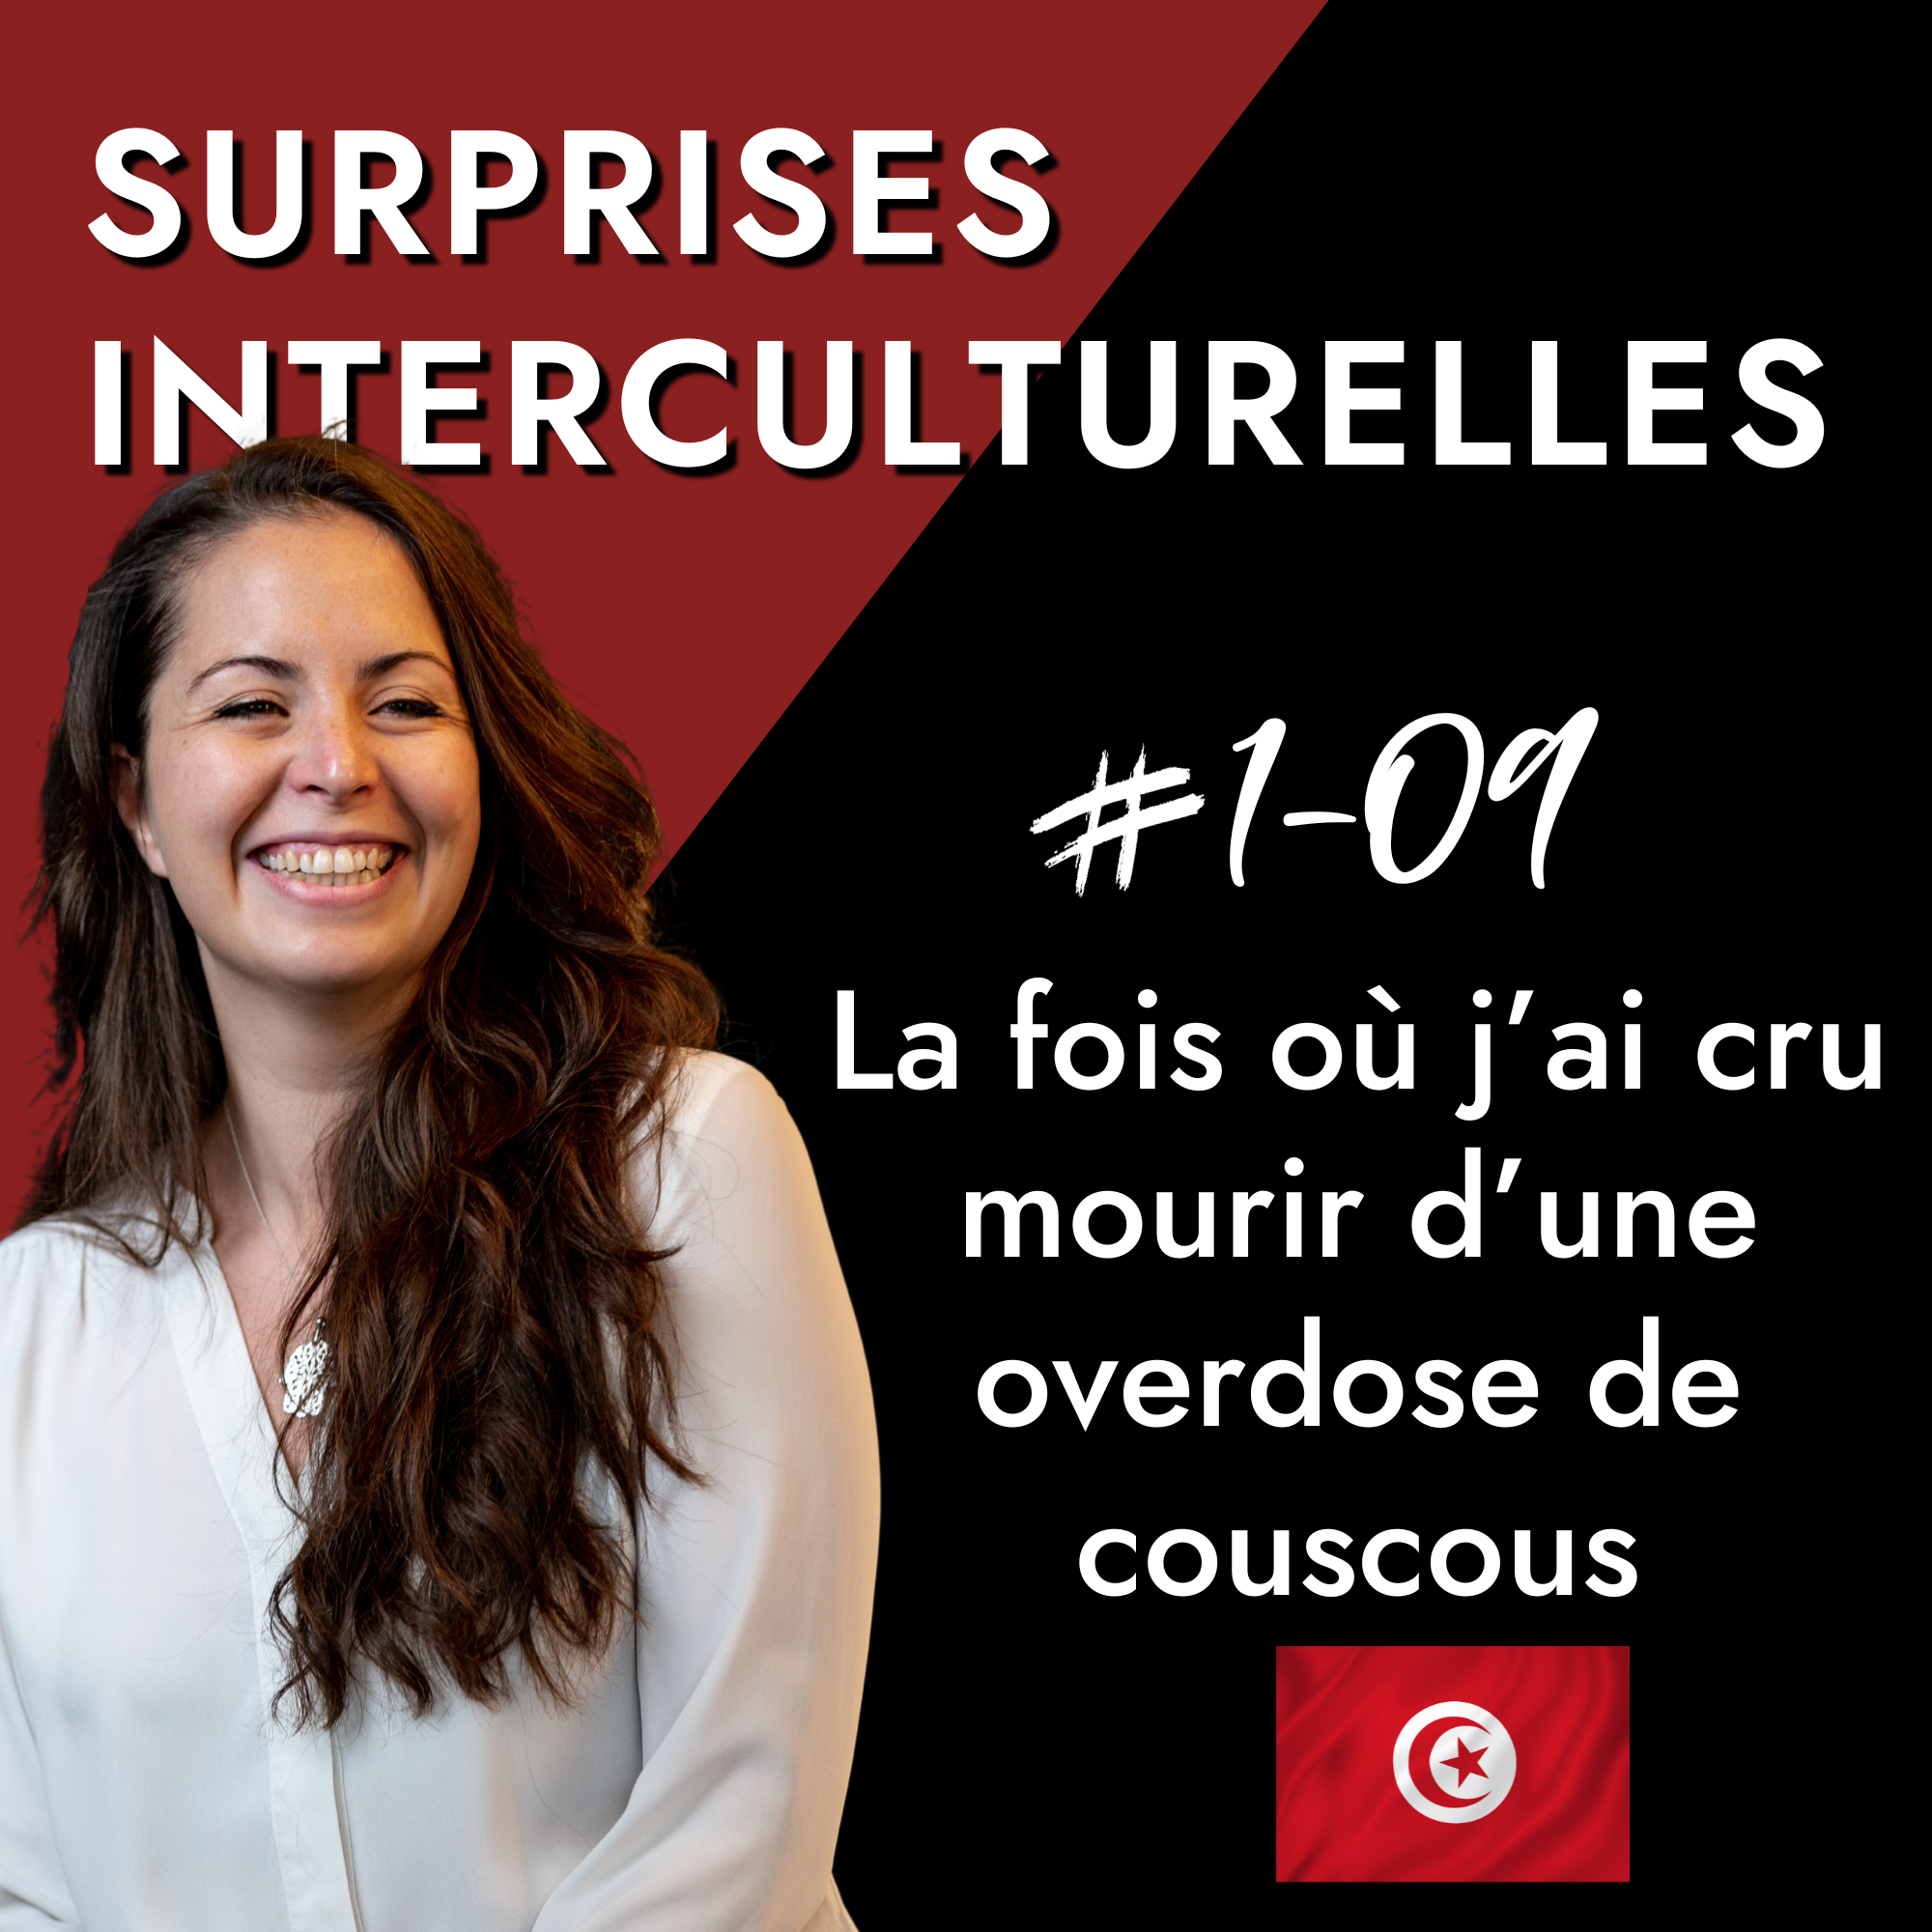 Cover podcast surprises interculturelles tunisie